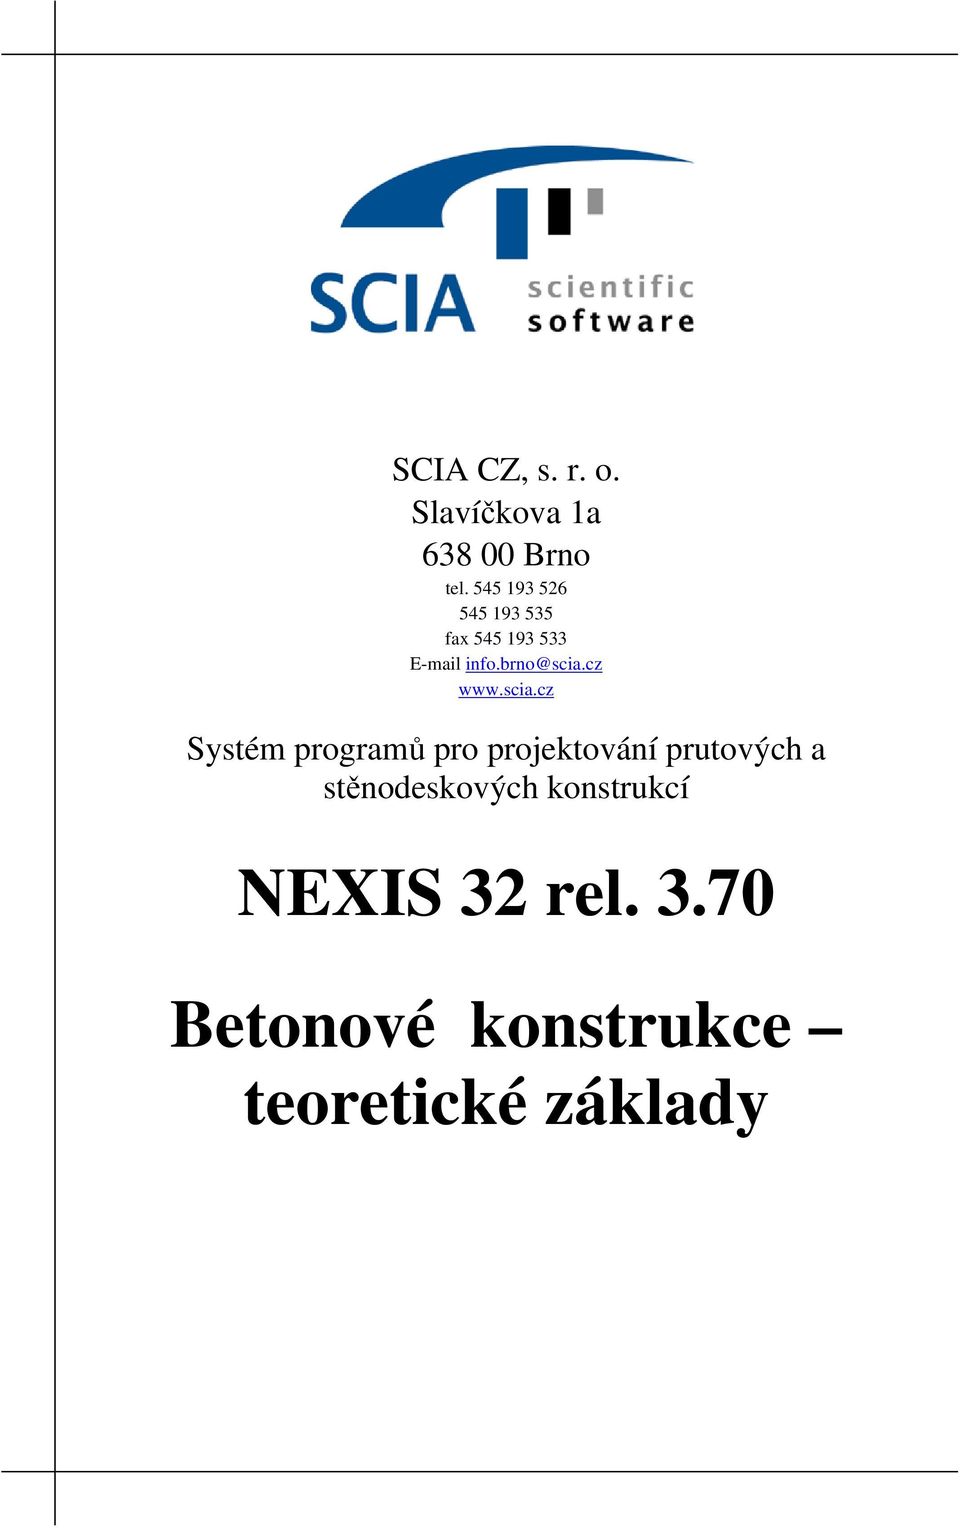 cz www.scia.